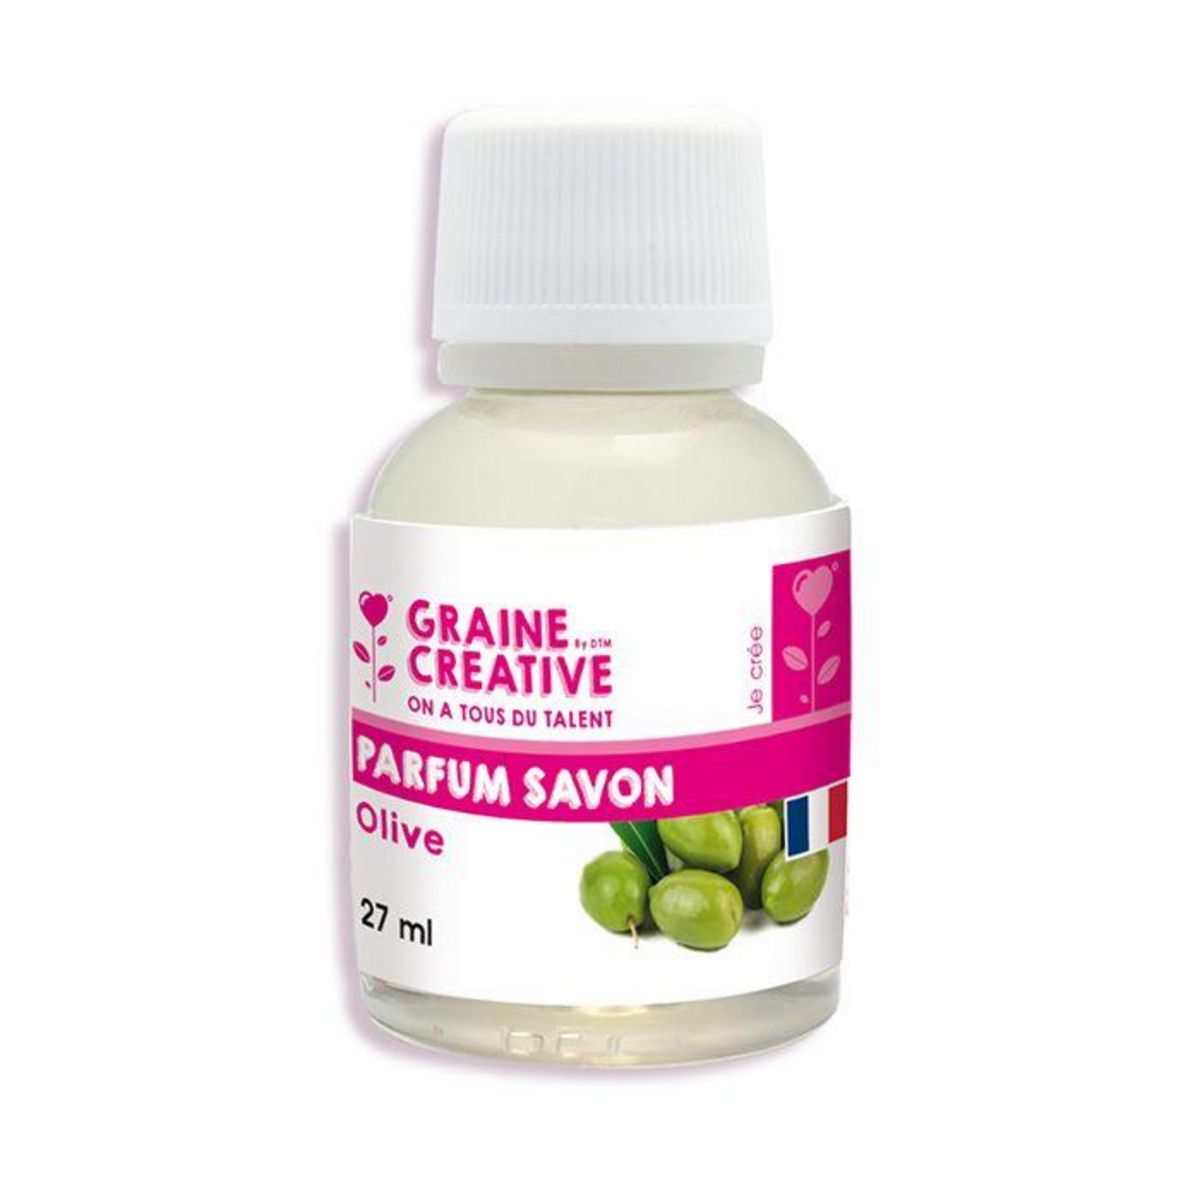 Graine créative Parfum pour savon 27 ml - Olive